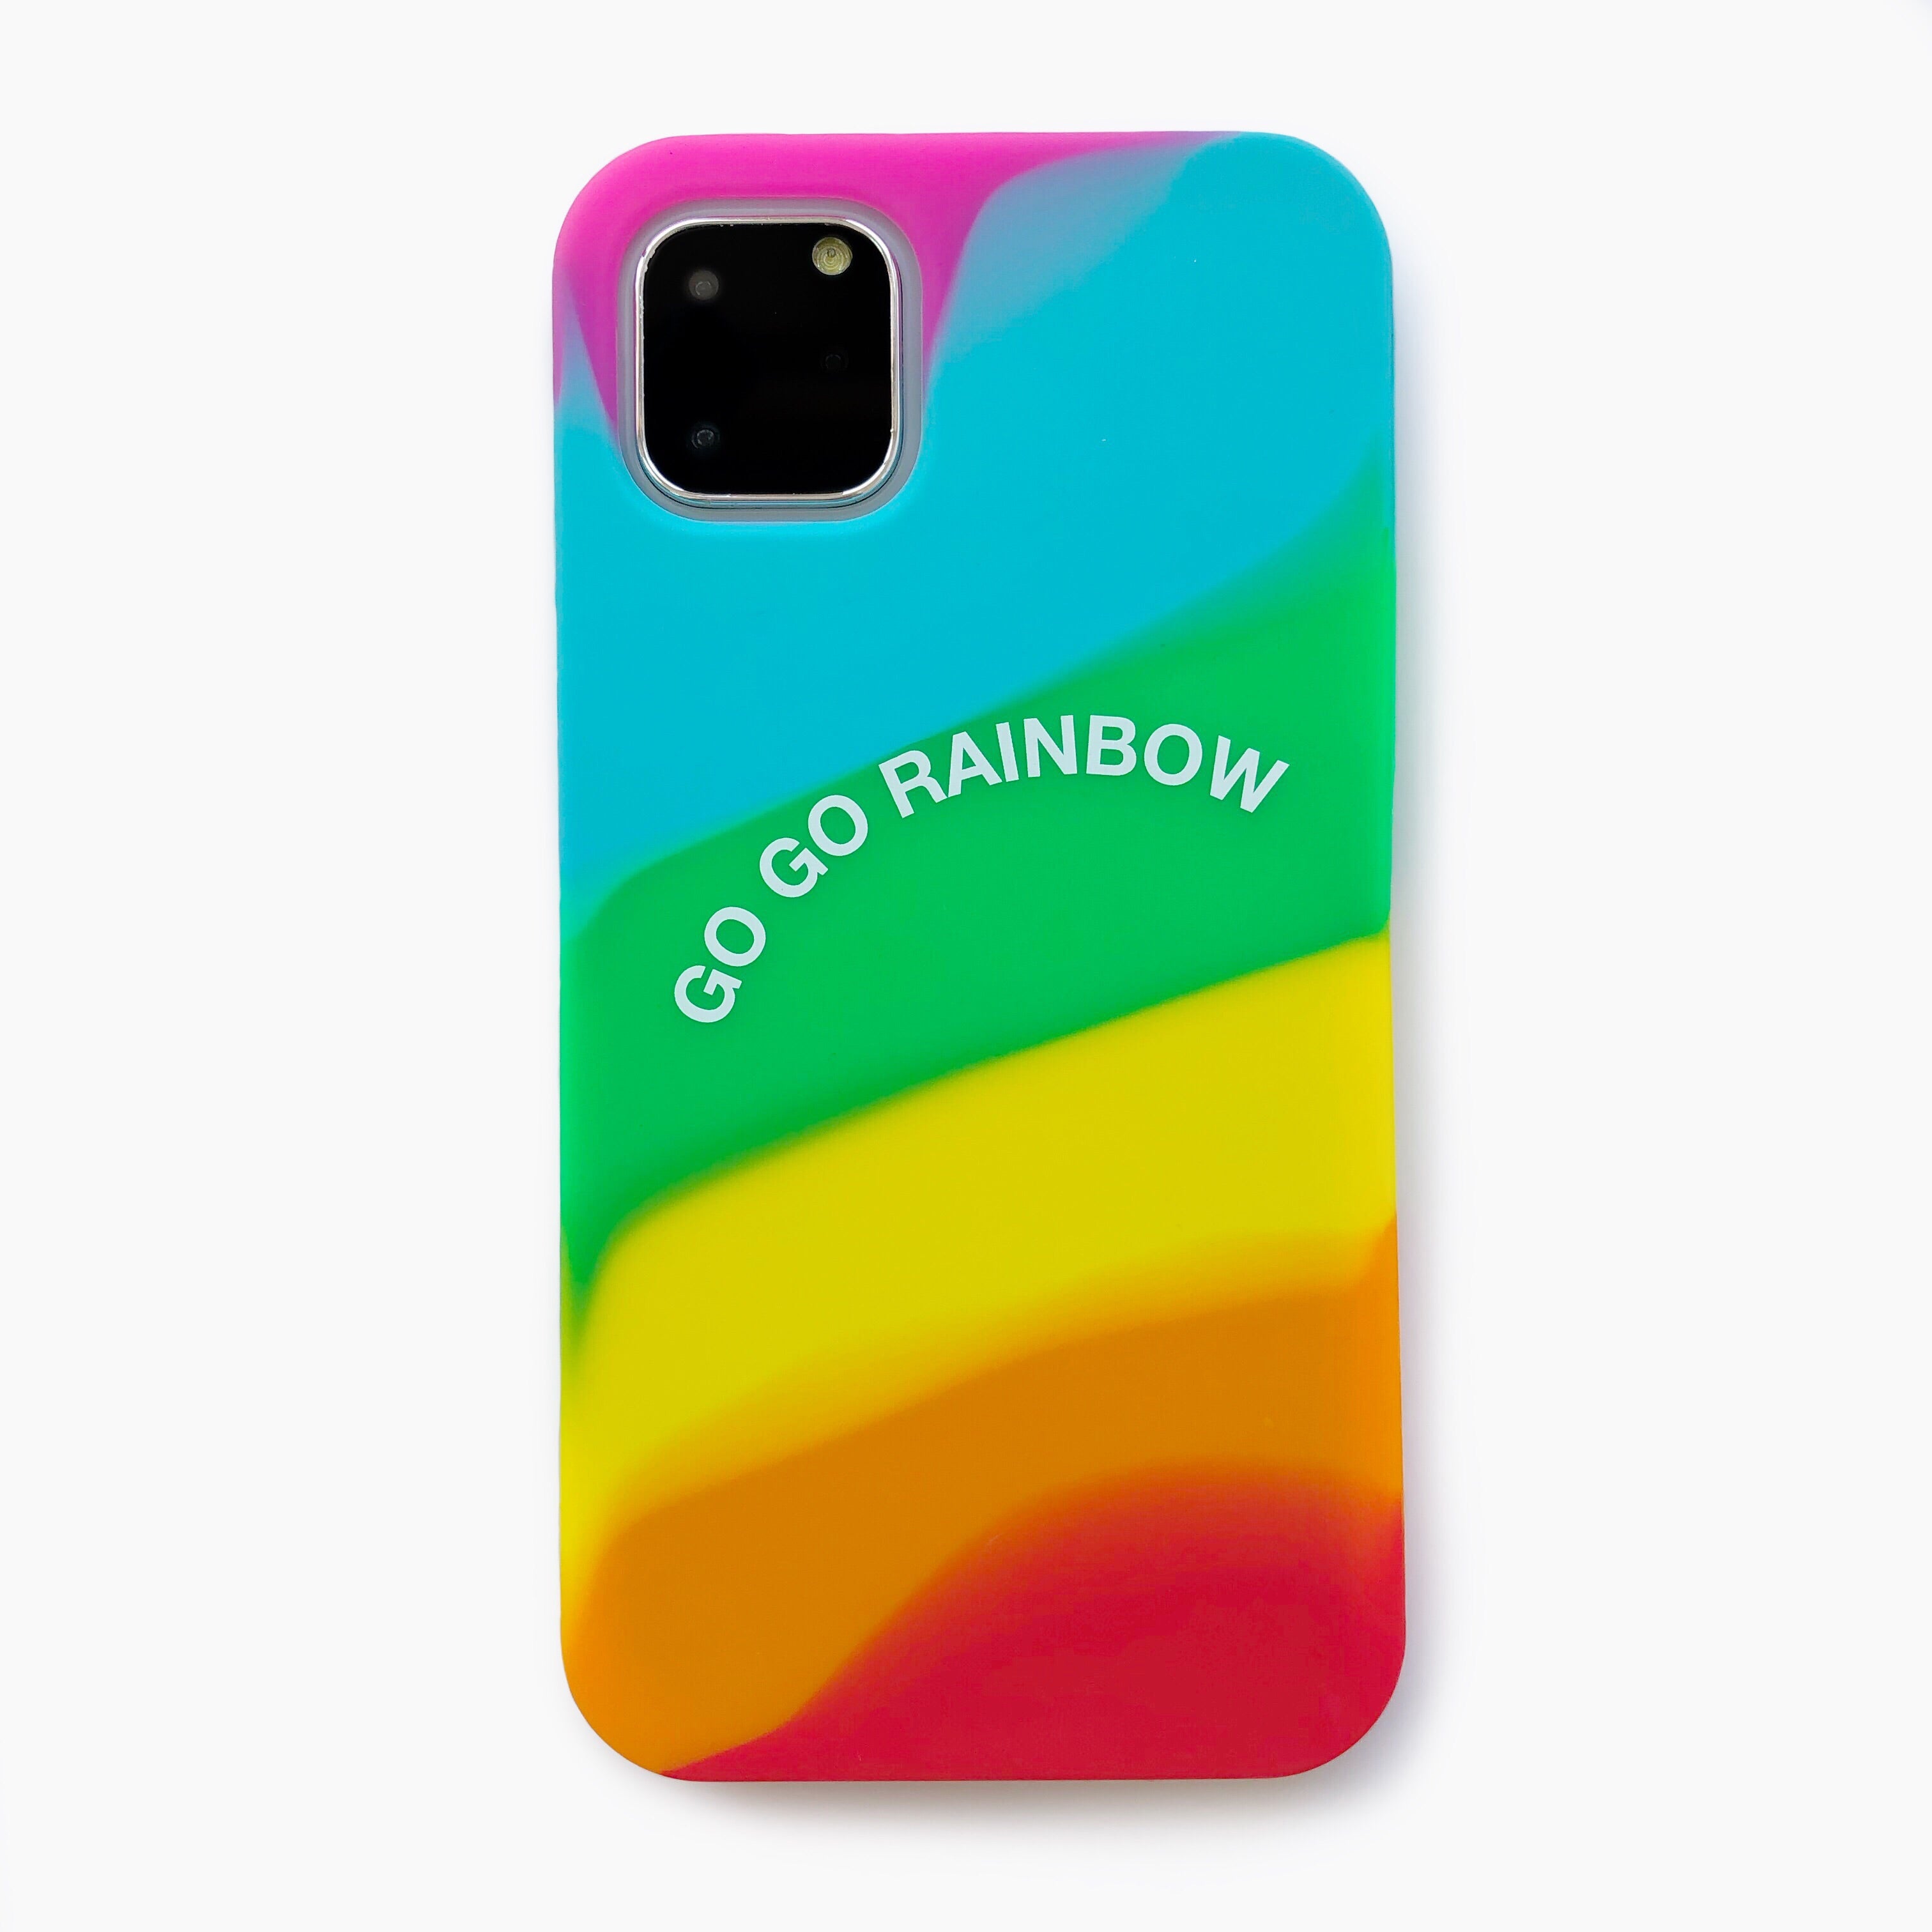 Candies Iphone 11 Pro Max Simple Case Go Go Rainbow Bright